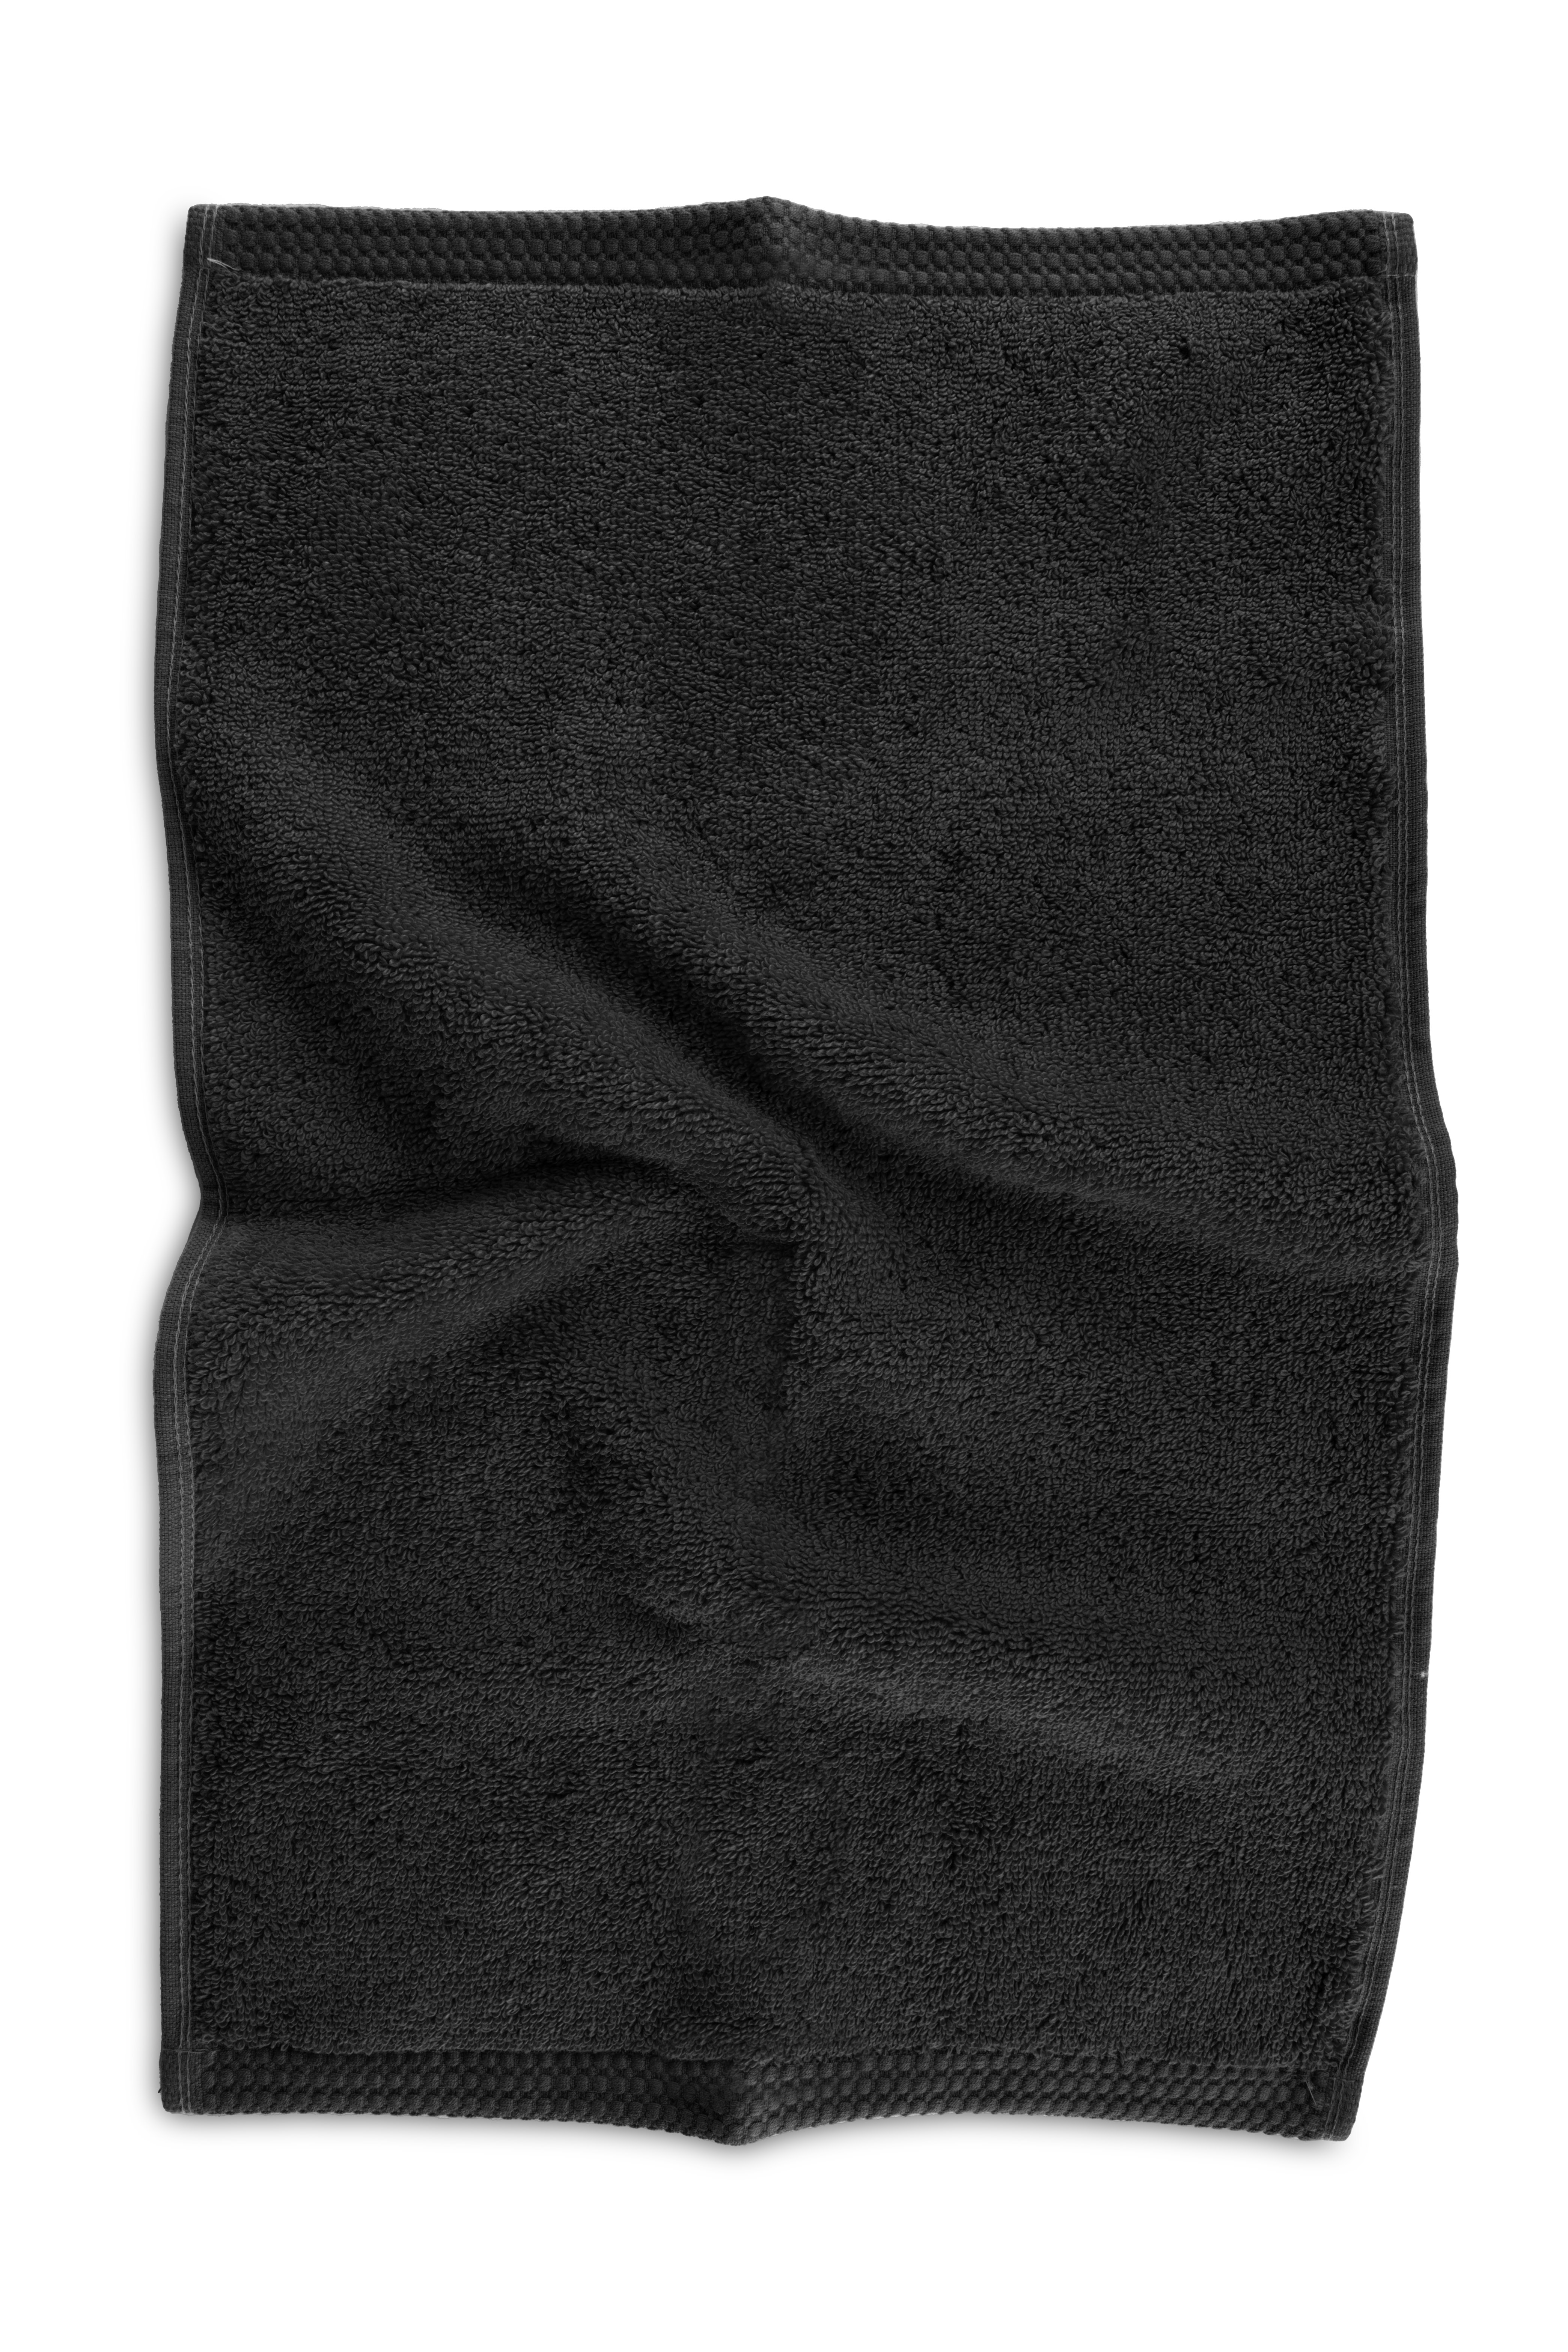 Serviette DELUX 30x50cm, black